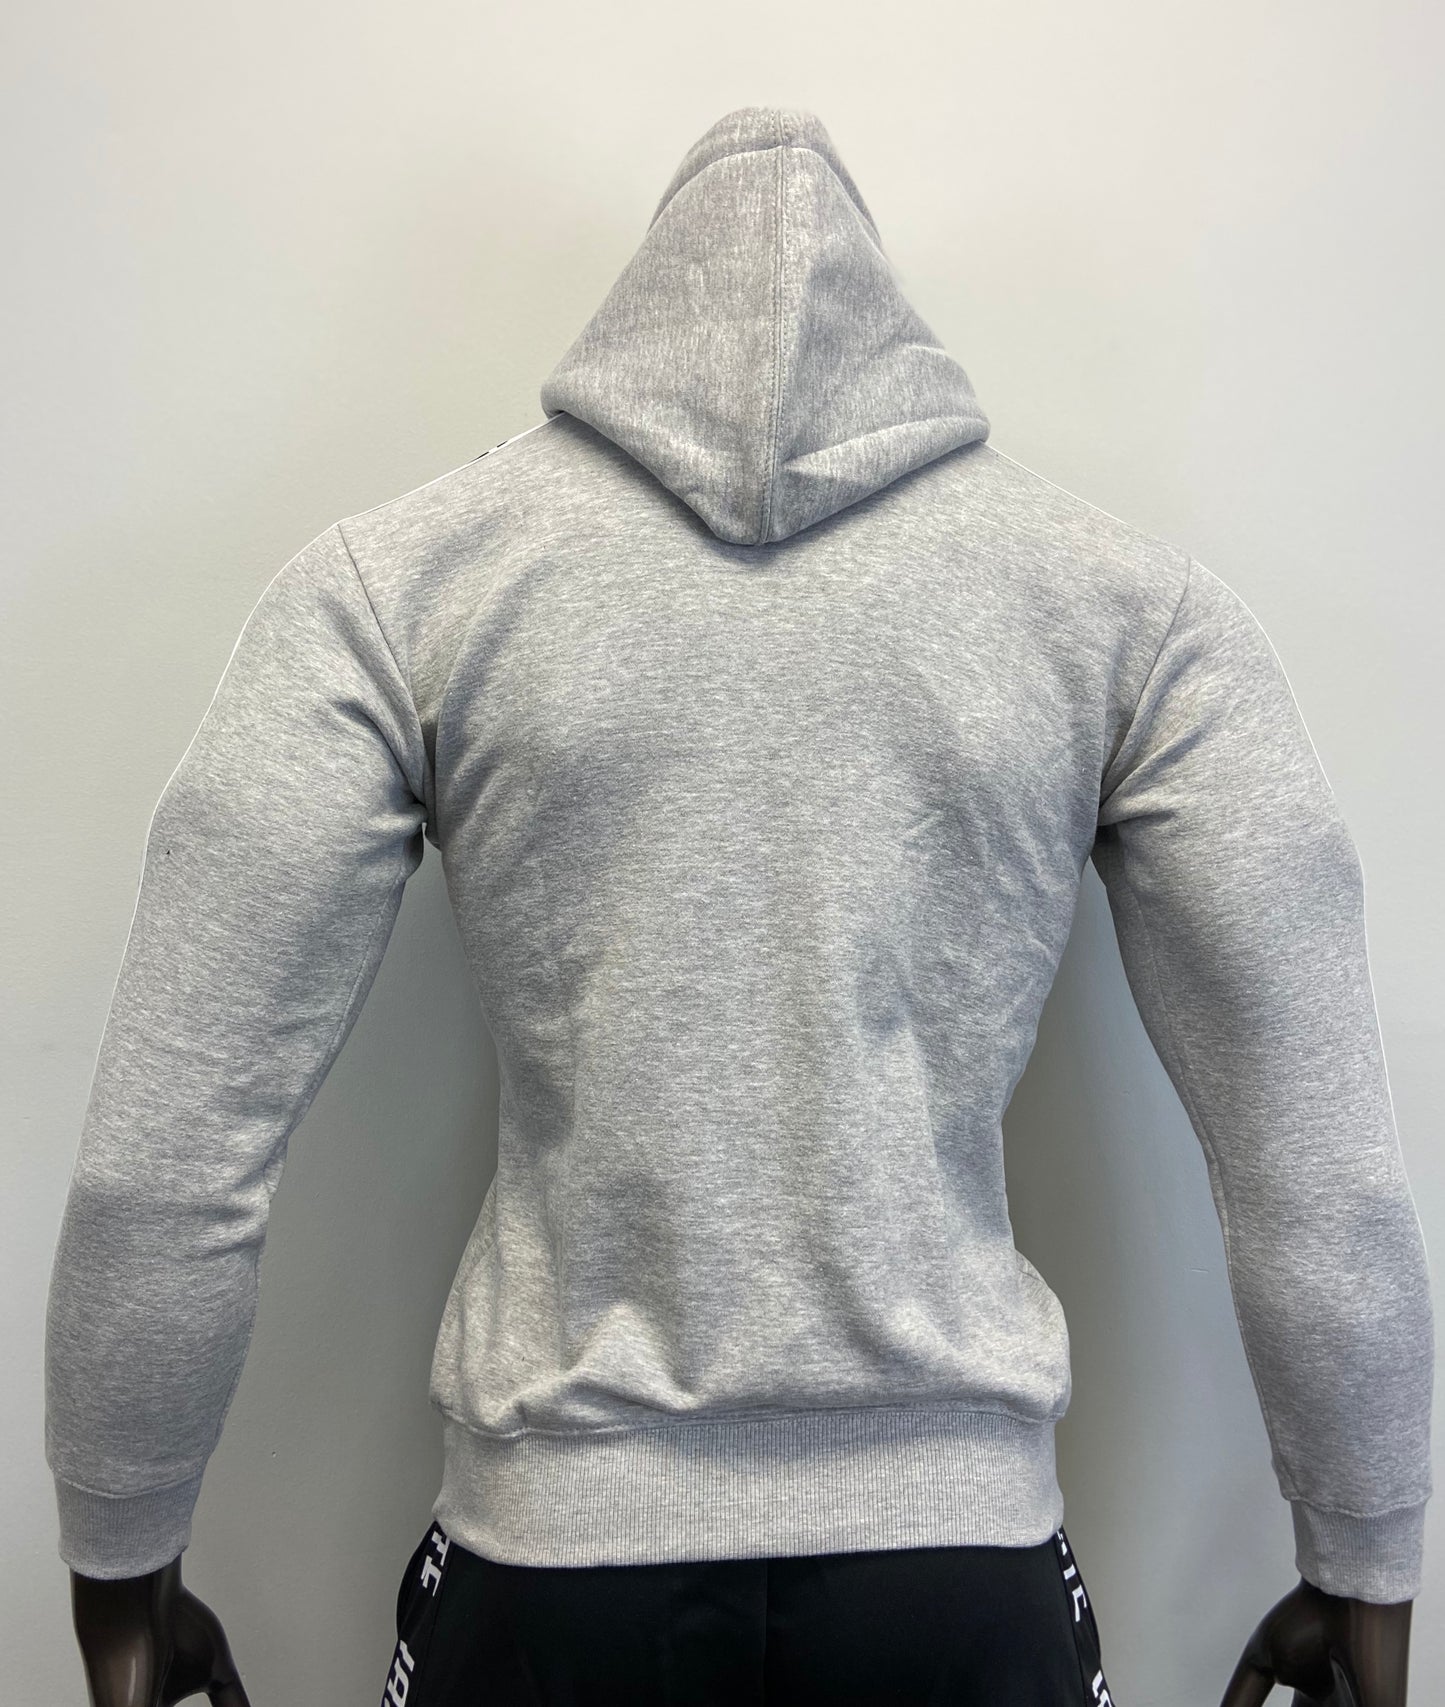 IAMELITE® Unisex Long Sleeve Hooded Sweatshirt Gray